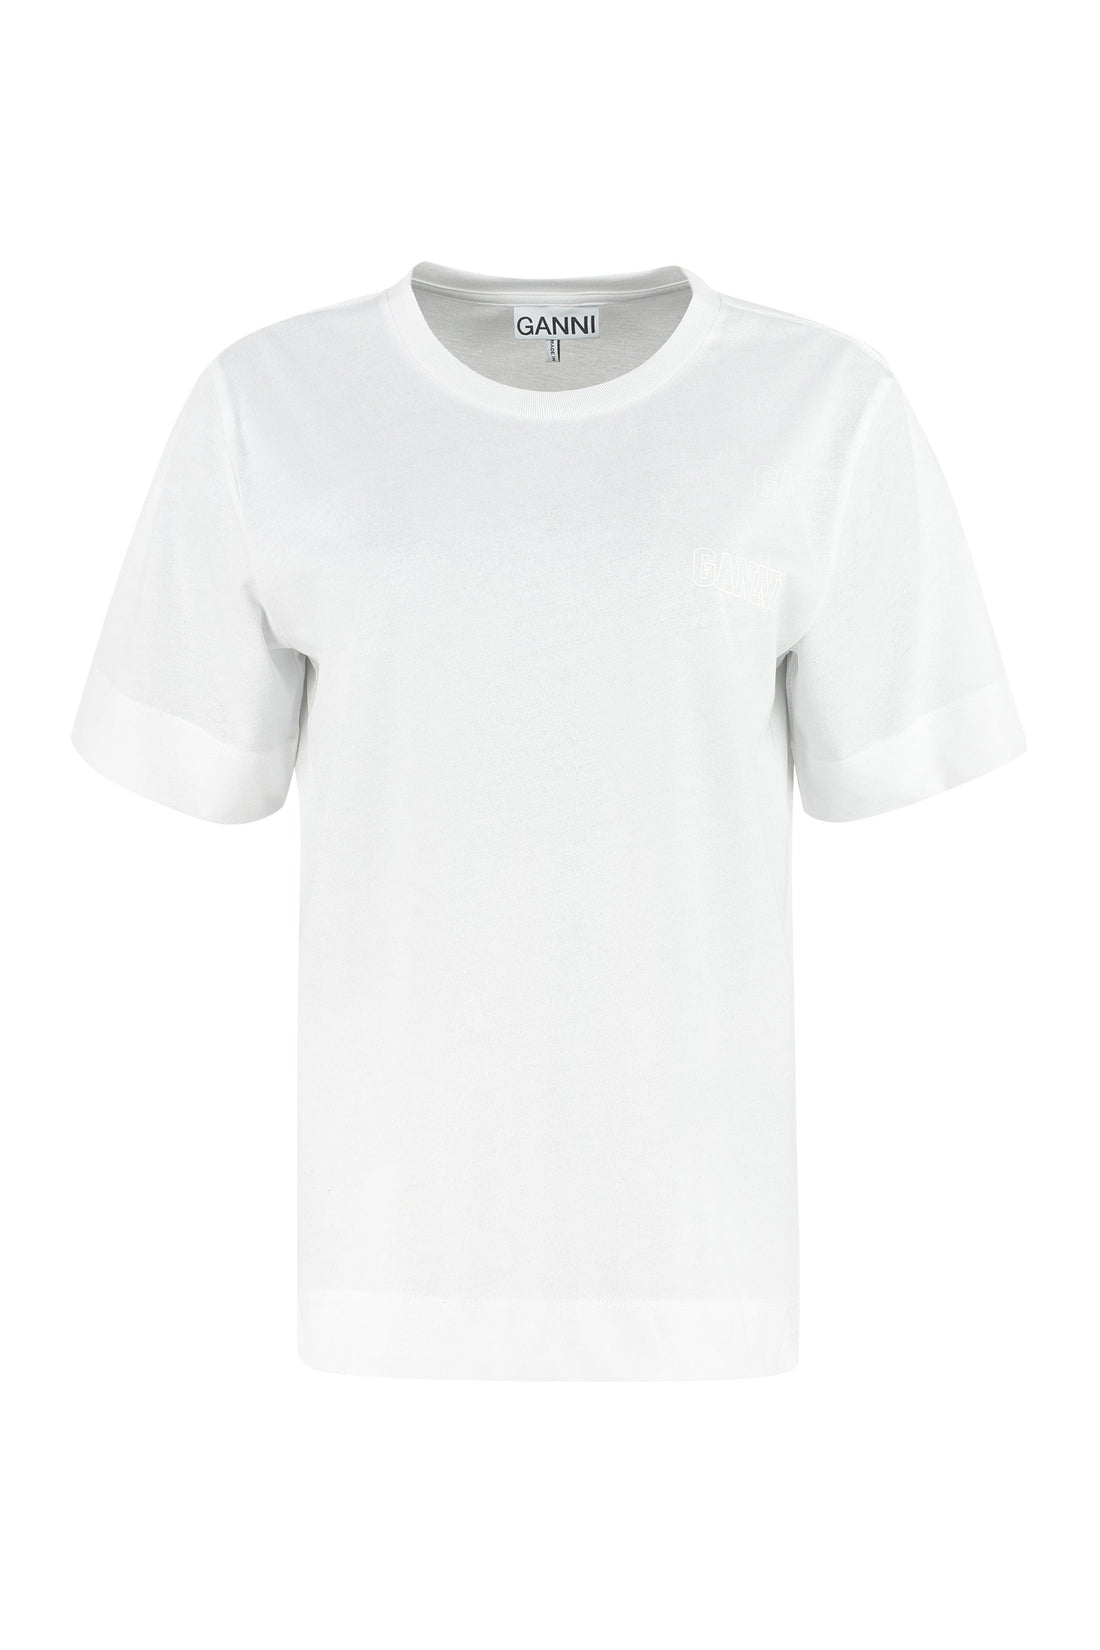 GANNI-OUTLET-SALE-Cotton crew-neck T-shirt-ARCHIVIST